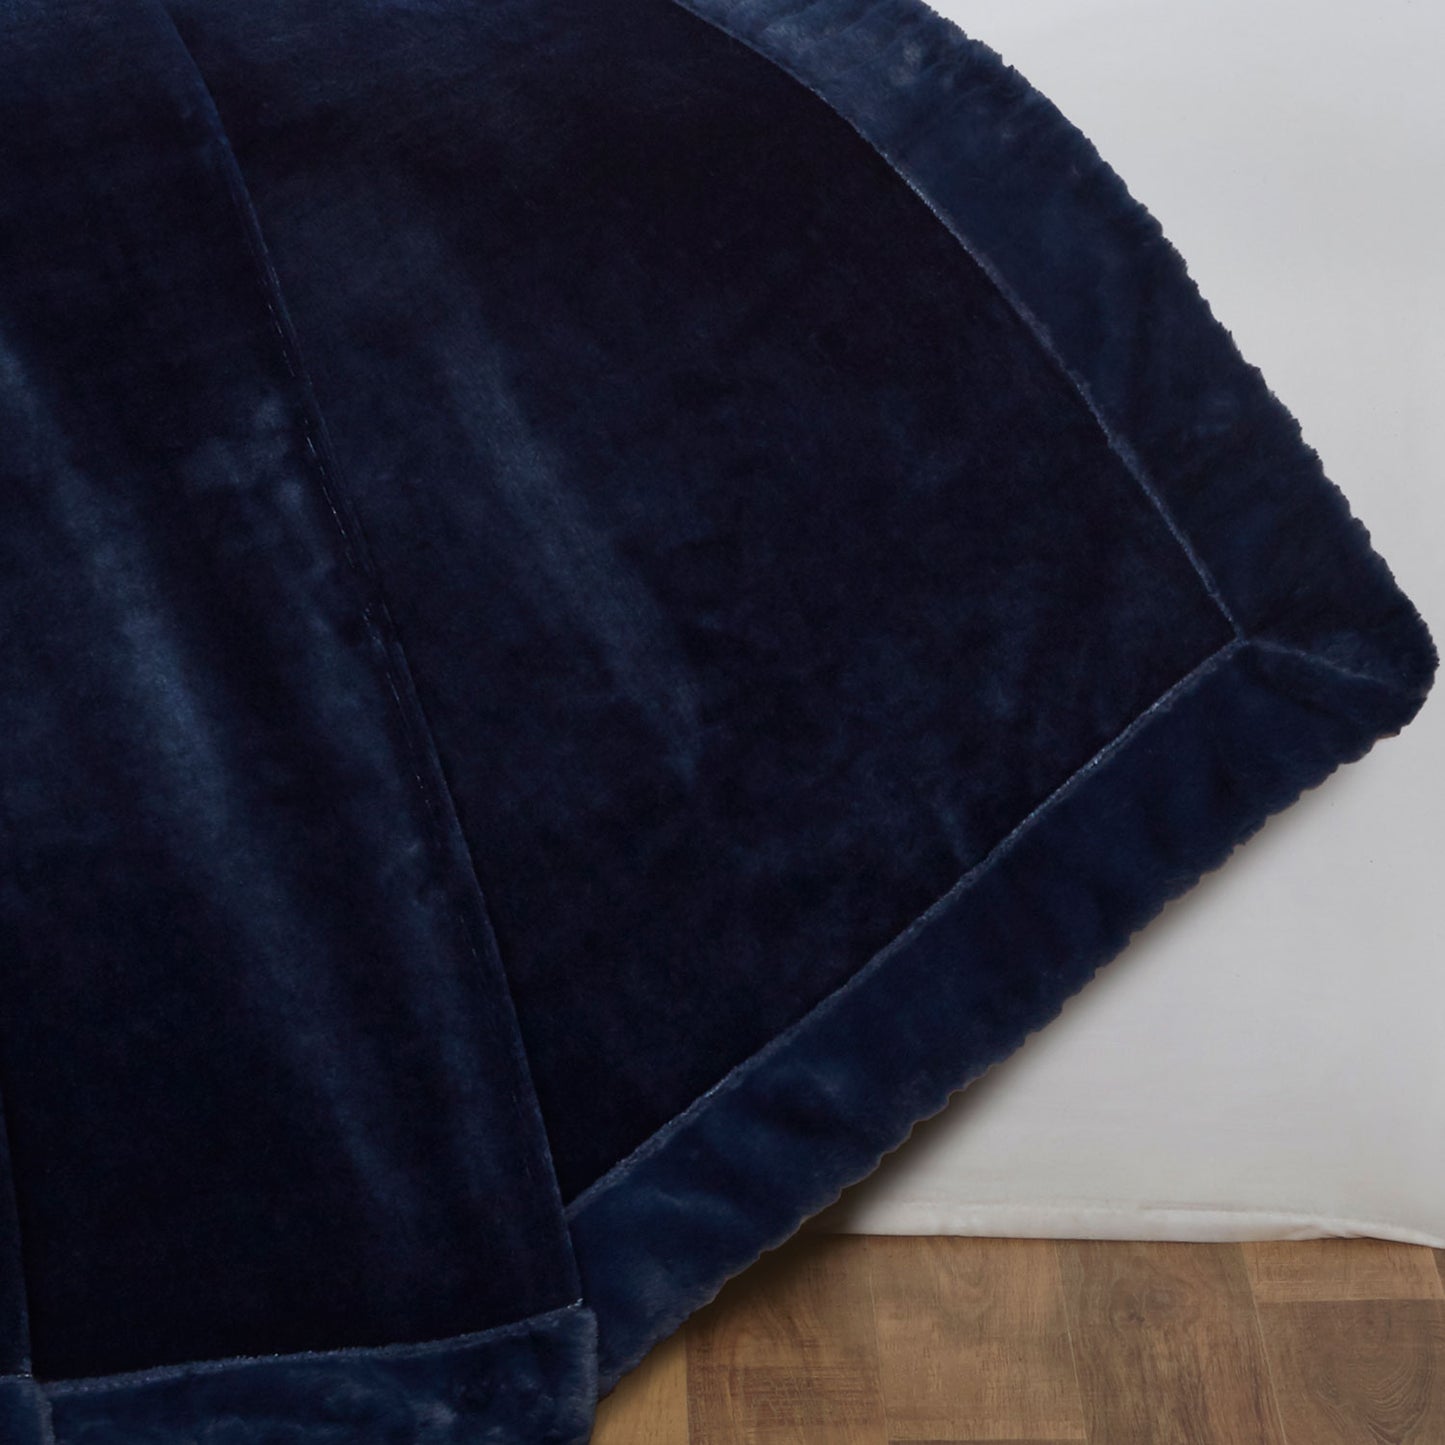 Vermont Navy Blue Fleece Throw with Faux Fur Trim (130cm x 180cm)